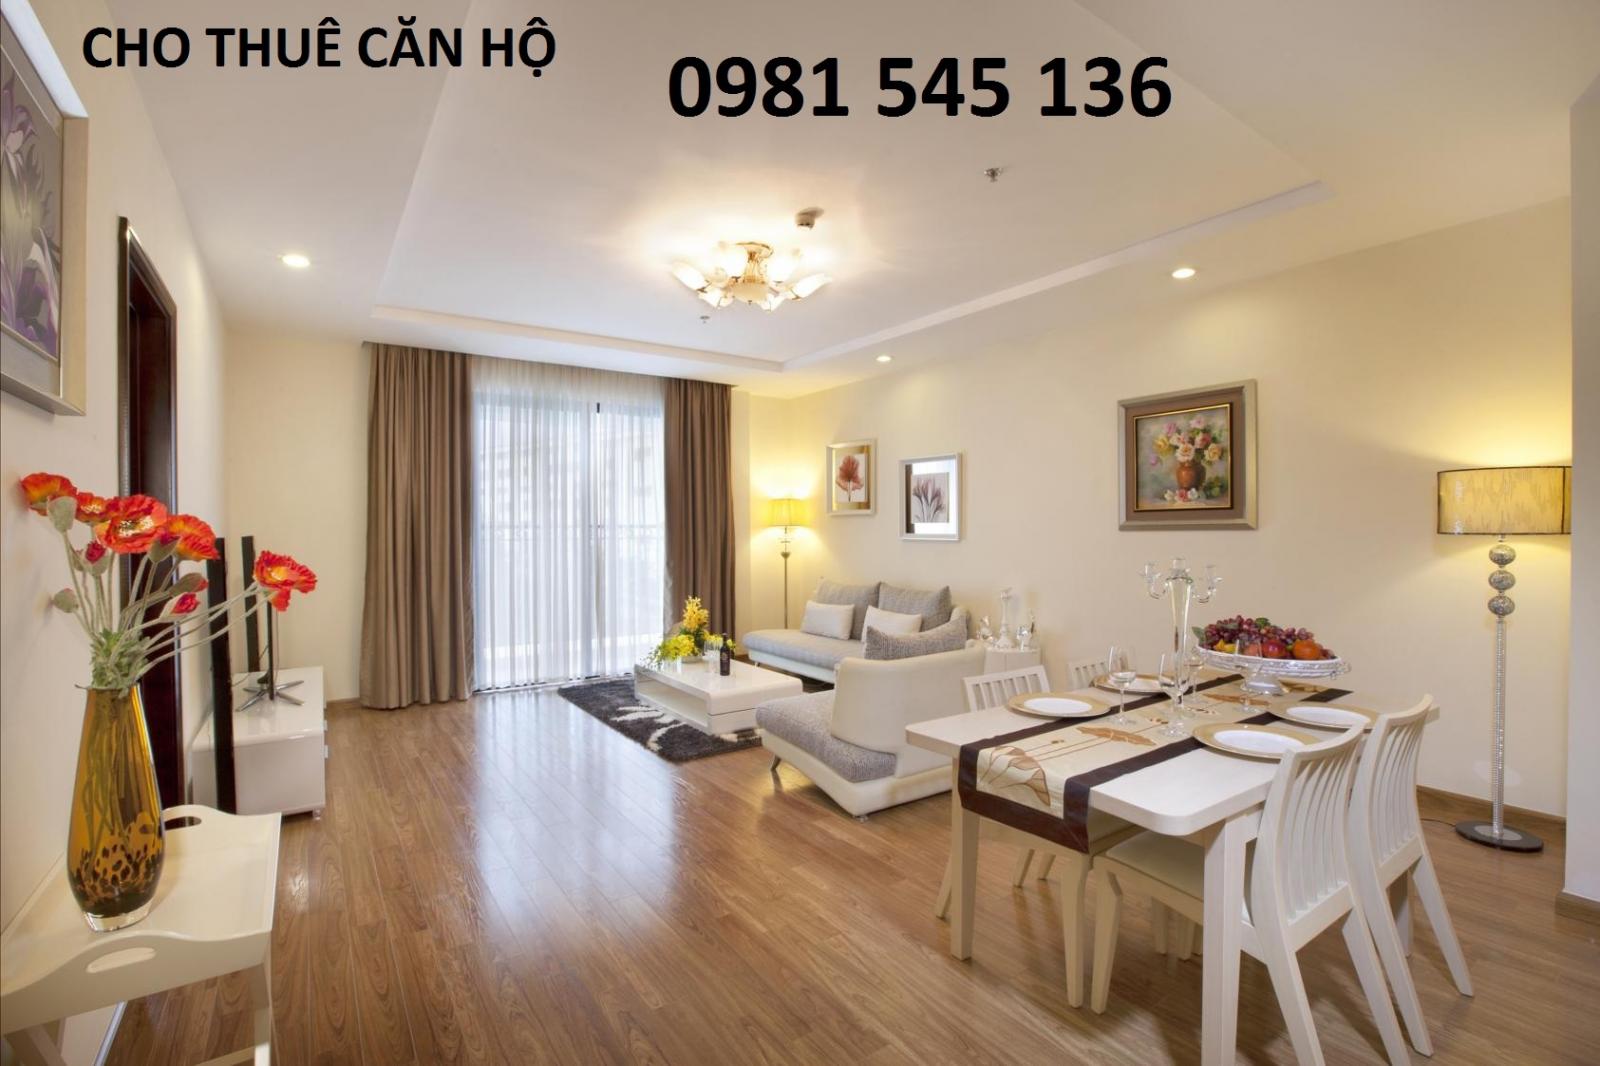 Cho thuê căn hộ CC phố Đội Cấn, Ba Đình, 40m2 1PN, nội thất rất đẹp, 7.5tr/th. LH 0981 545 136 960678